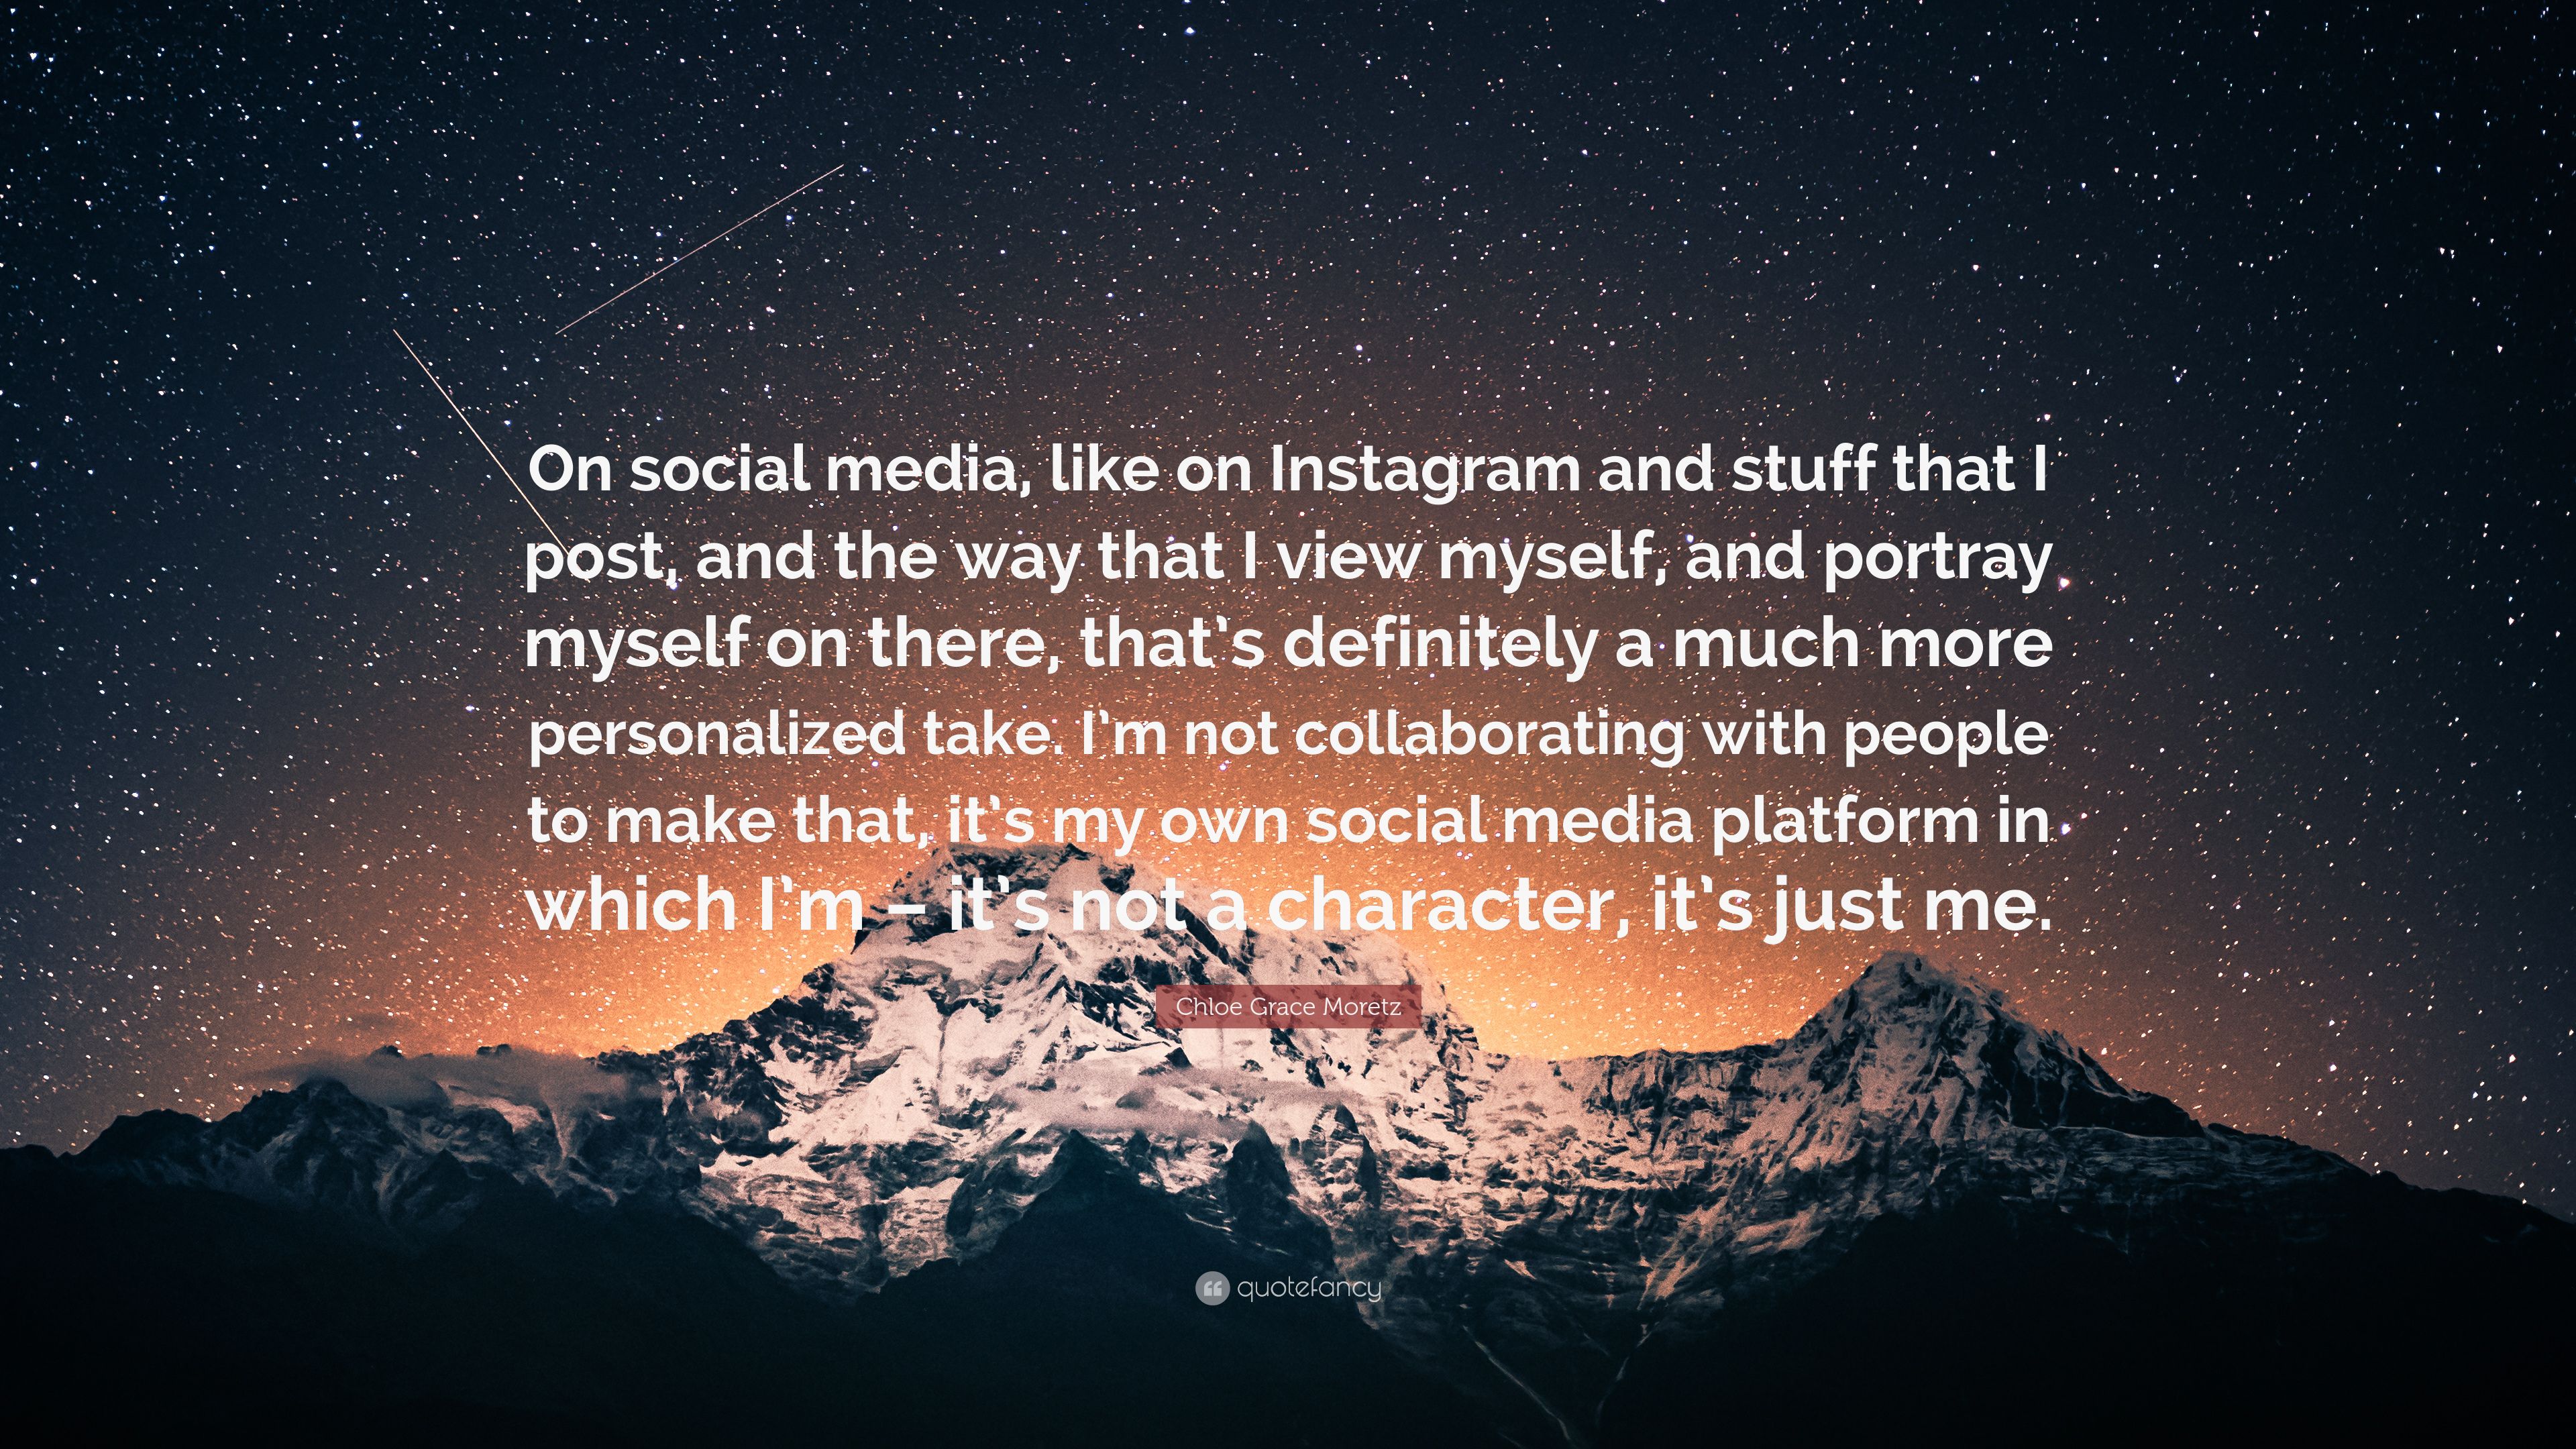 Chloe Grace Moretz Quote: “On social media, like on Instagram